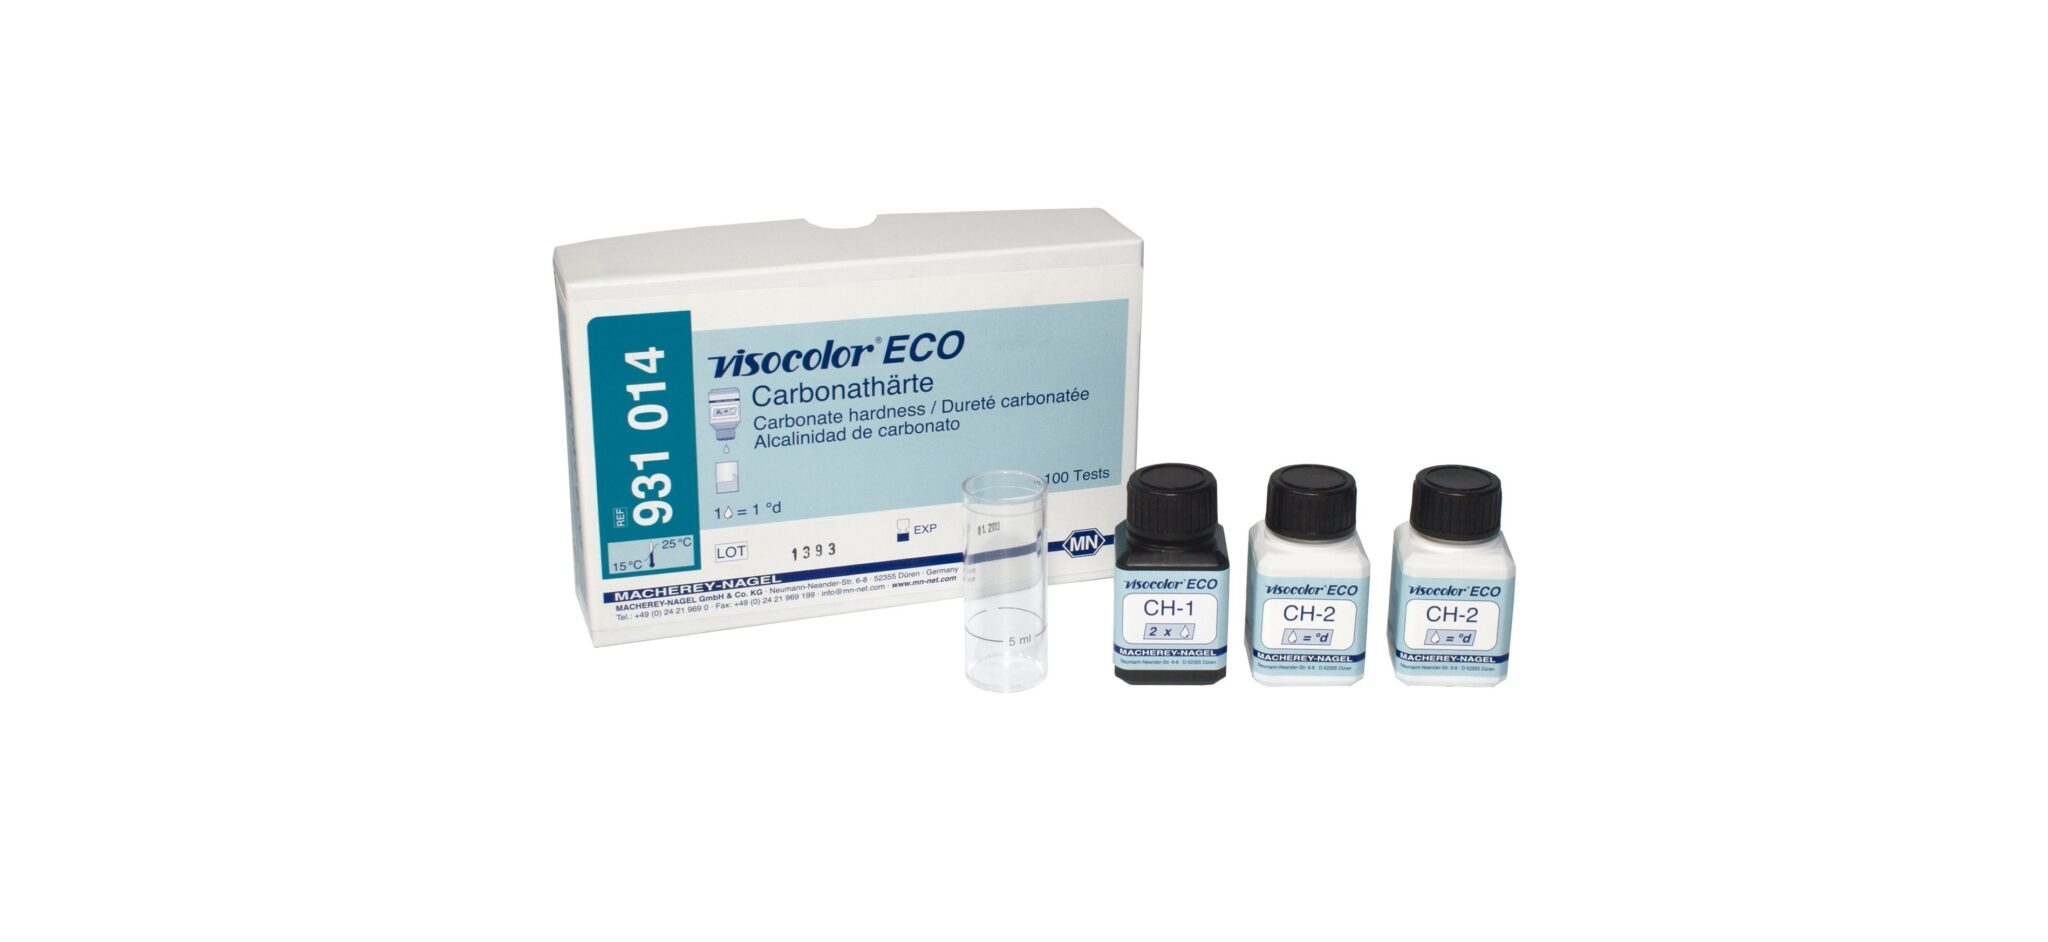 visocolor ECO Chlorine Dioxide Test Kit